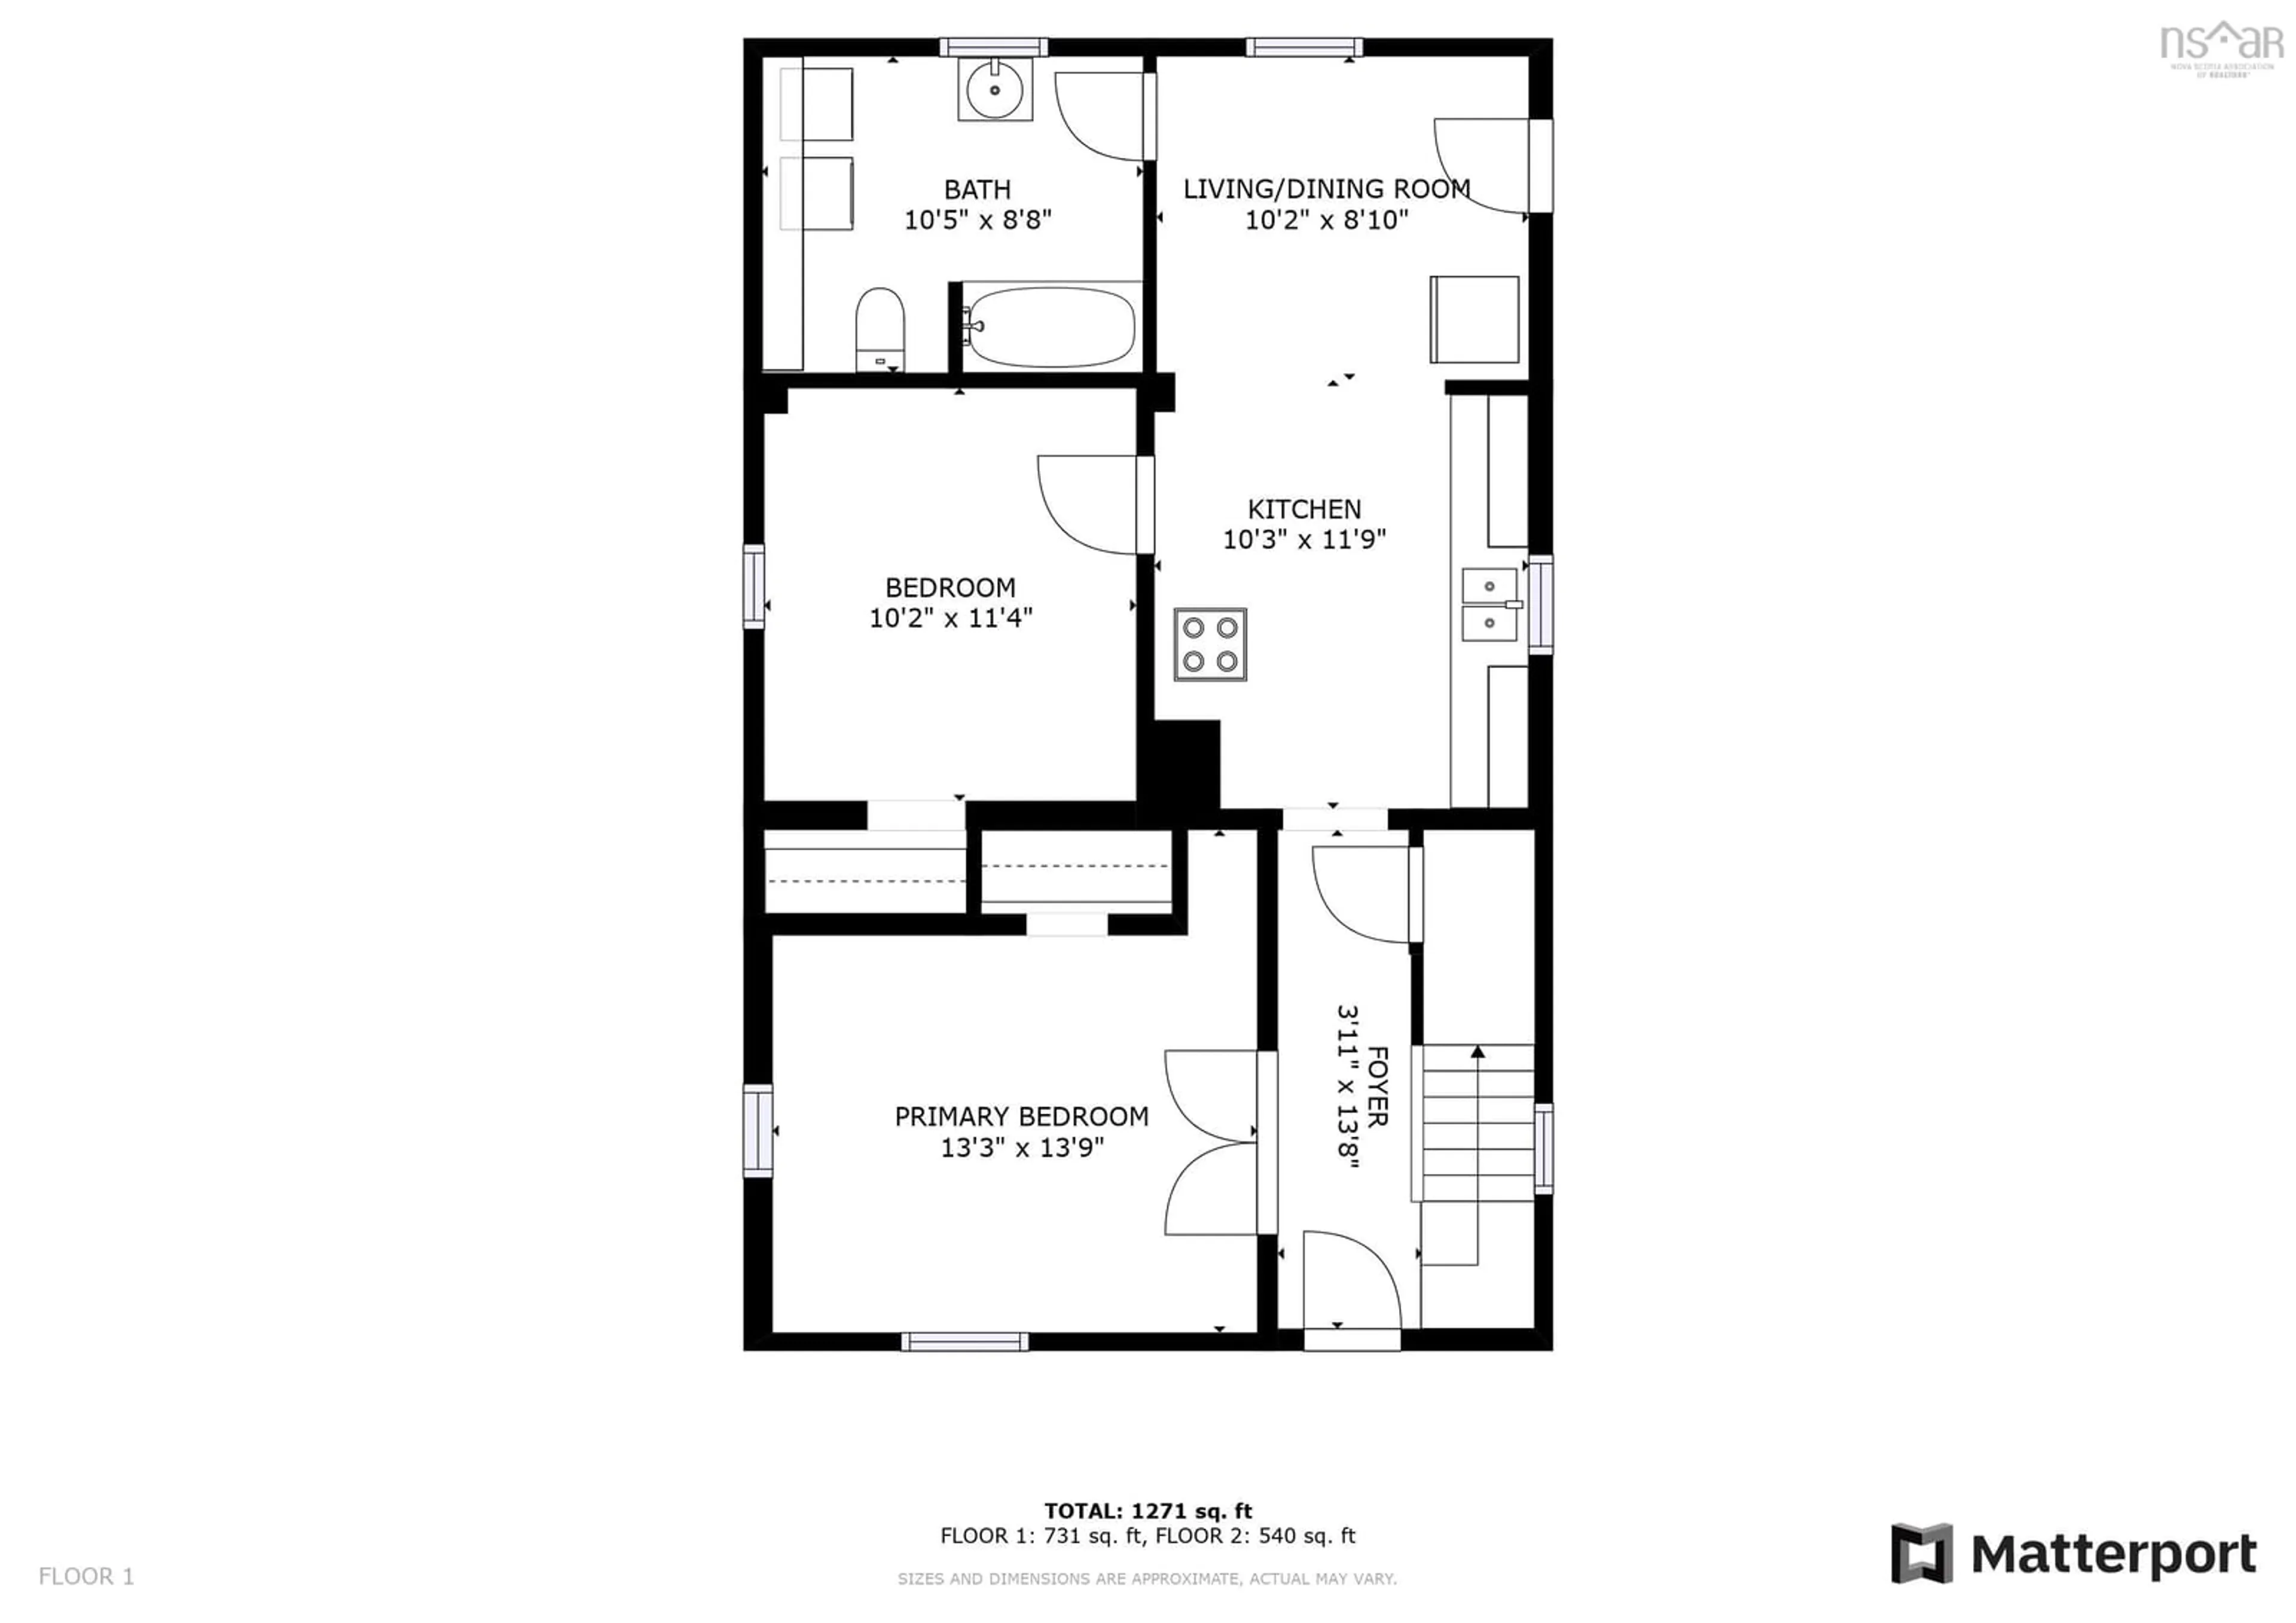 Floor plan for 179 Gaspereau Ave, Wolfville Nova Scotia B4P 2E5